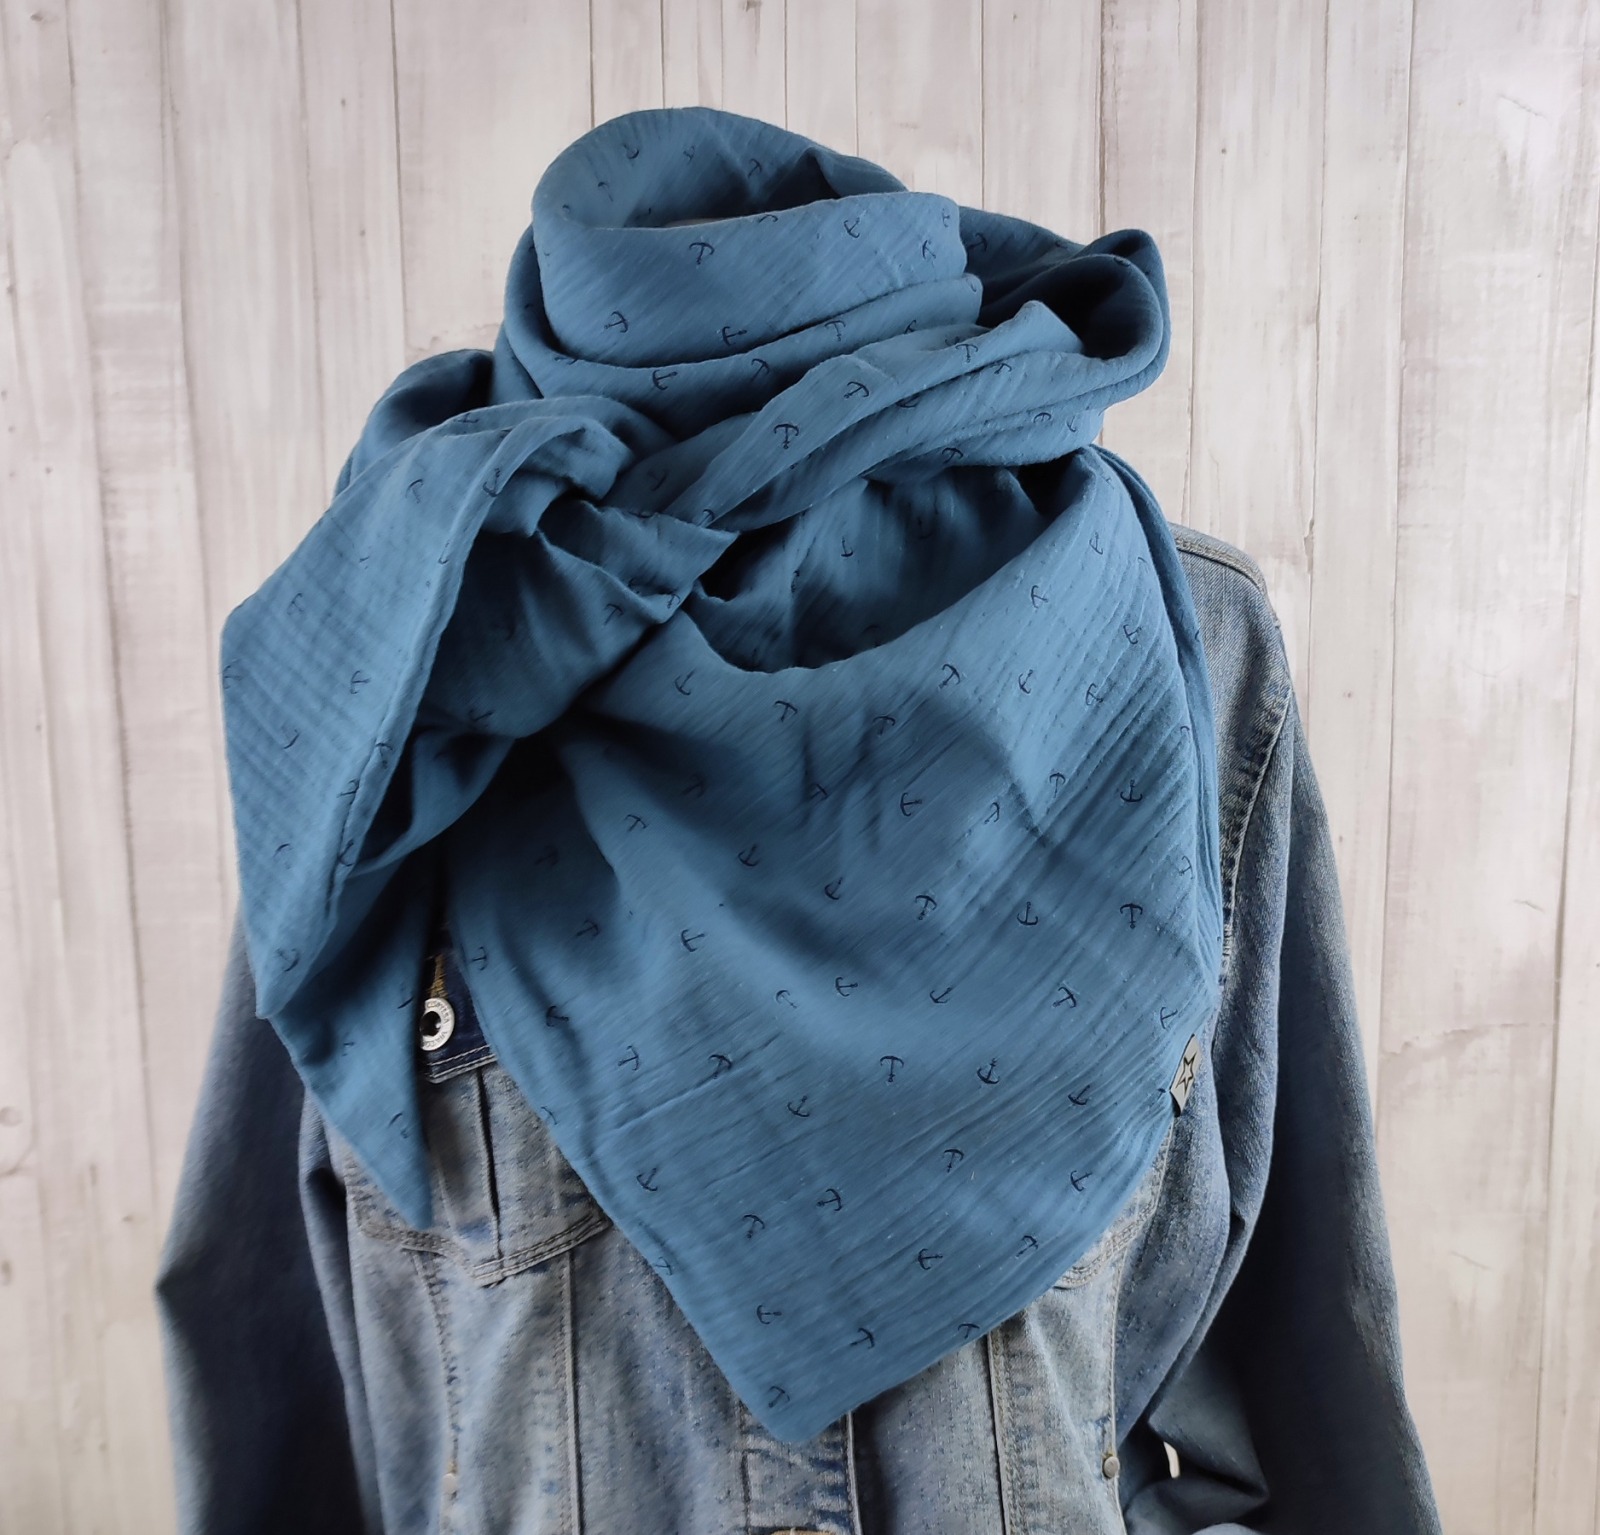 Tuch Anker - Dreieckstuch Musselin Damen - Schal jeansblau mit Ankern in dunkelblau - XXL Tuch aus Baumwolle - Mamatuch 4